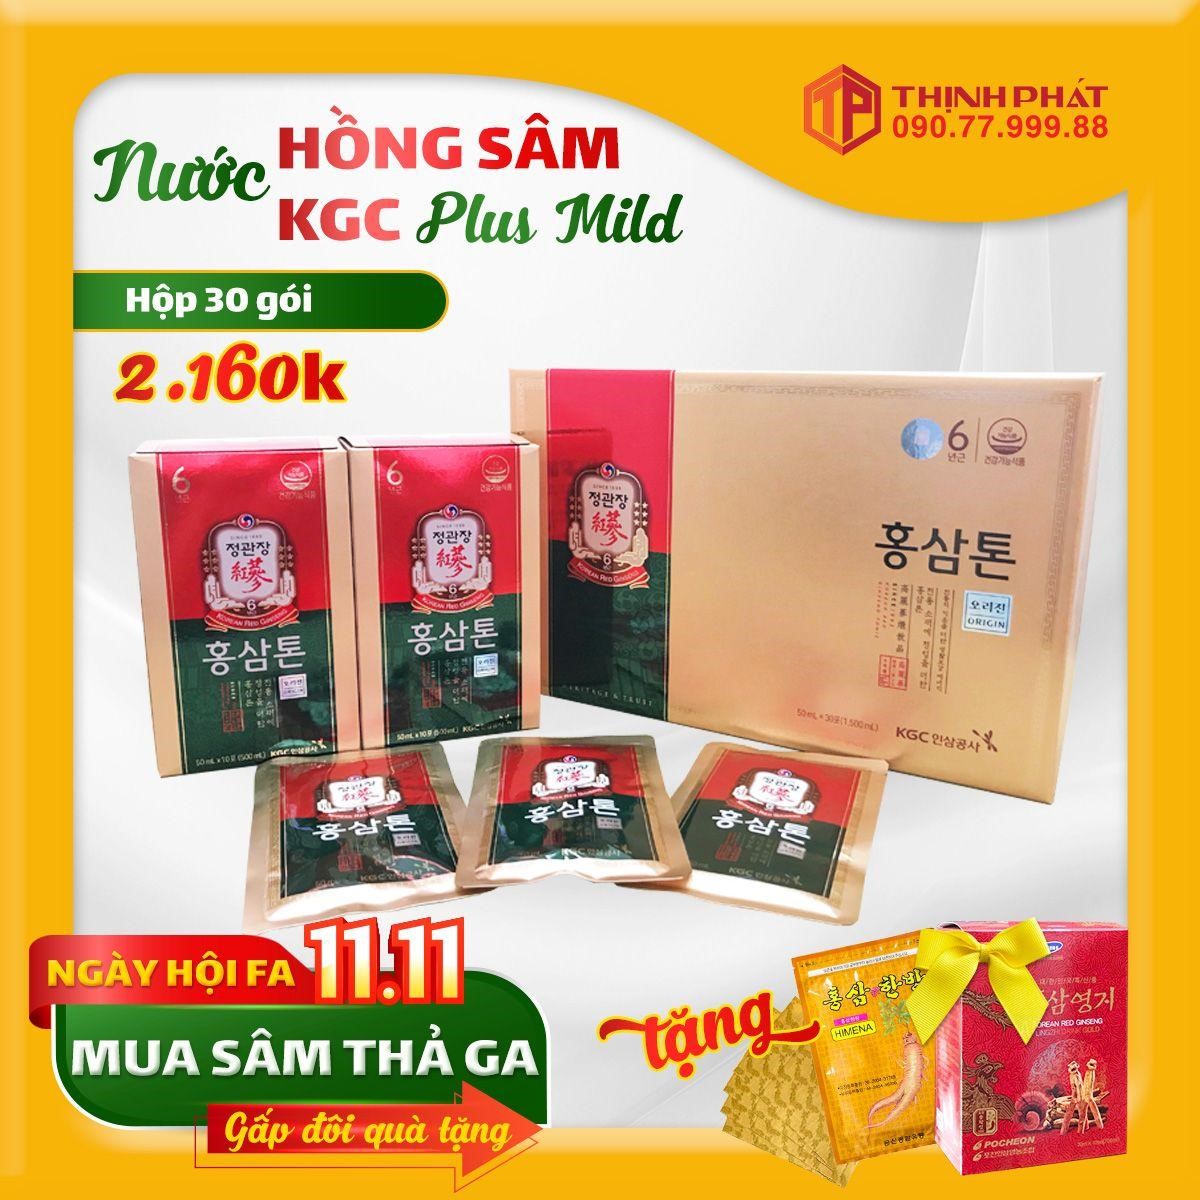 Nước hồng sâm KGC Plus Mild Hàn Quốc hộp 30 gói x 50ml